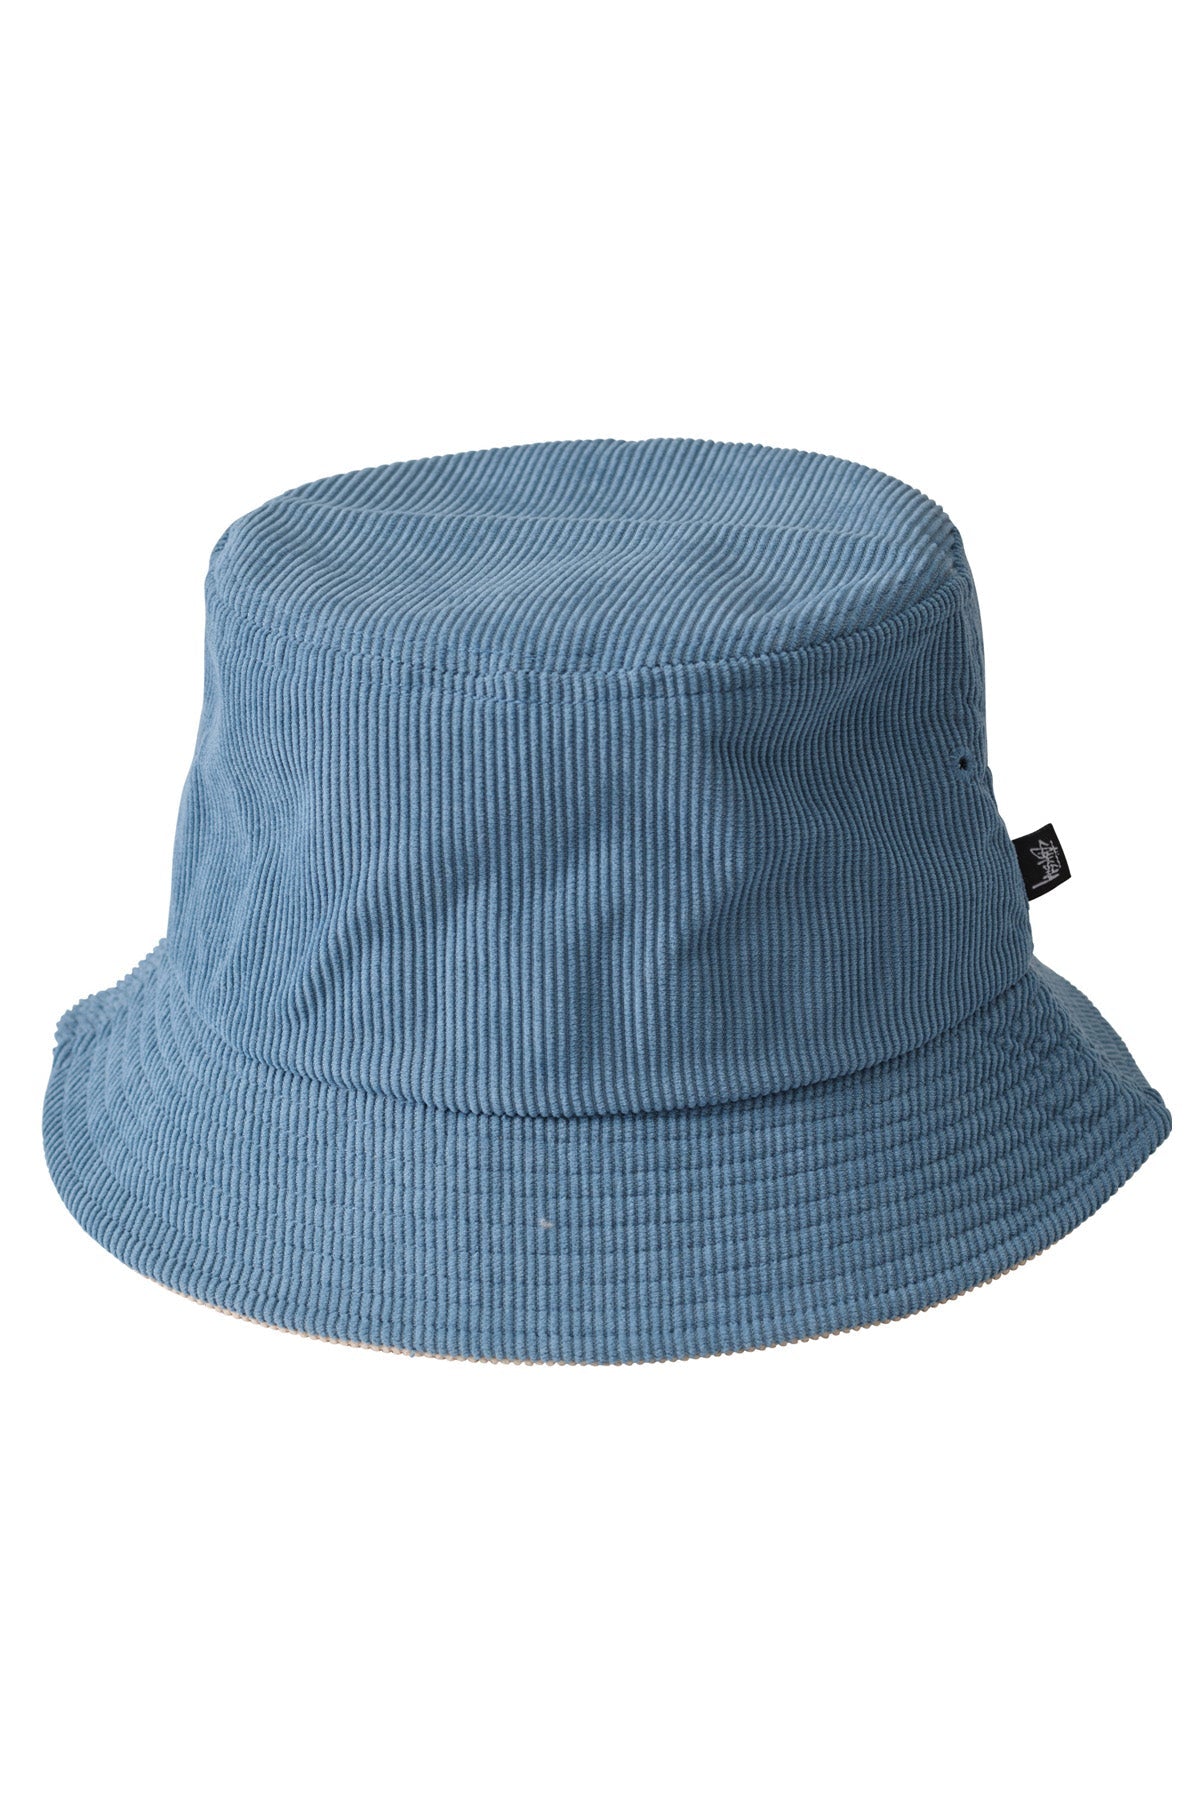 Stussy - graffiti cord bucket hat - natural/ steel blue